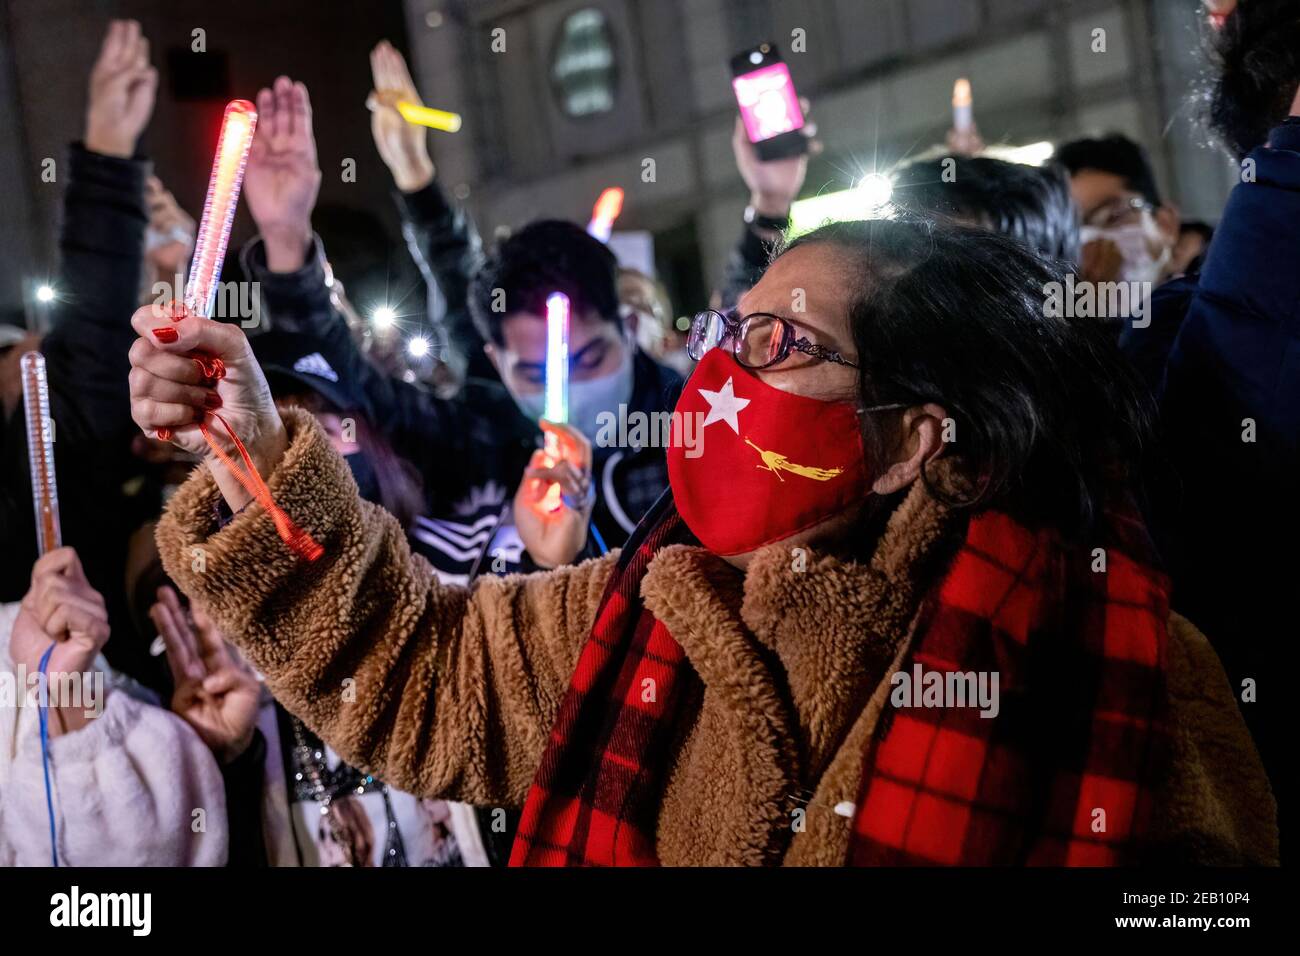 Un protestore che indossa una maschera facciale associata alla Lega Nazionale per la democrazia (NLD) vista durante la dimostrazione. I dimostranti birmani riuniti presso l’Università delle Nazioni Unite chiedono che il leader del Myanmar, Aung San Suu Kyi detenuto nel bel mezzo di un colpo di stato militare, sia liberato e invita l’organismo internazionale a condannare ulteriormente le azioni militari del Myanmar. Foto Stock